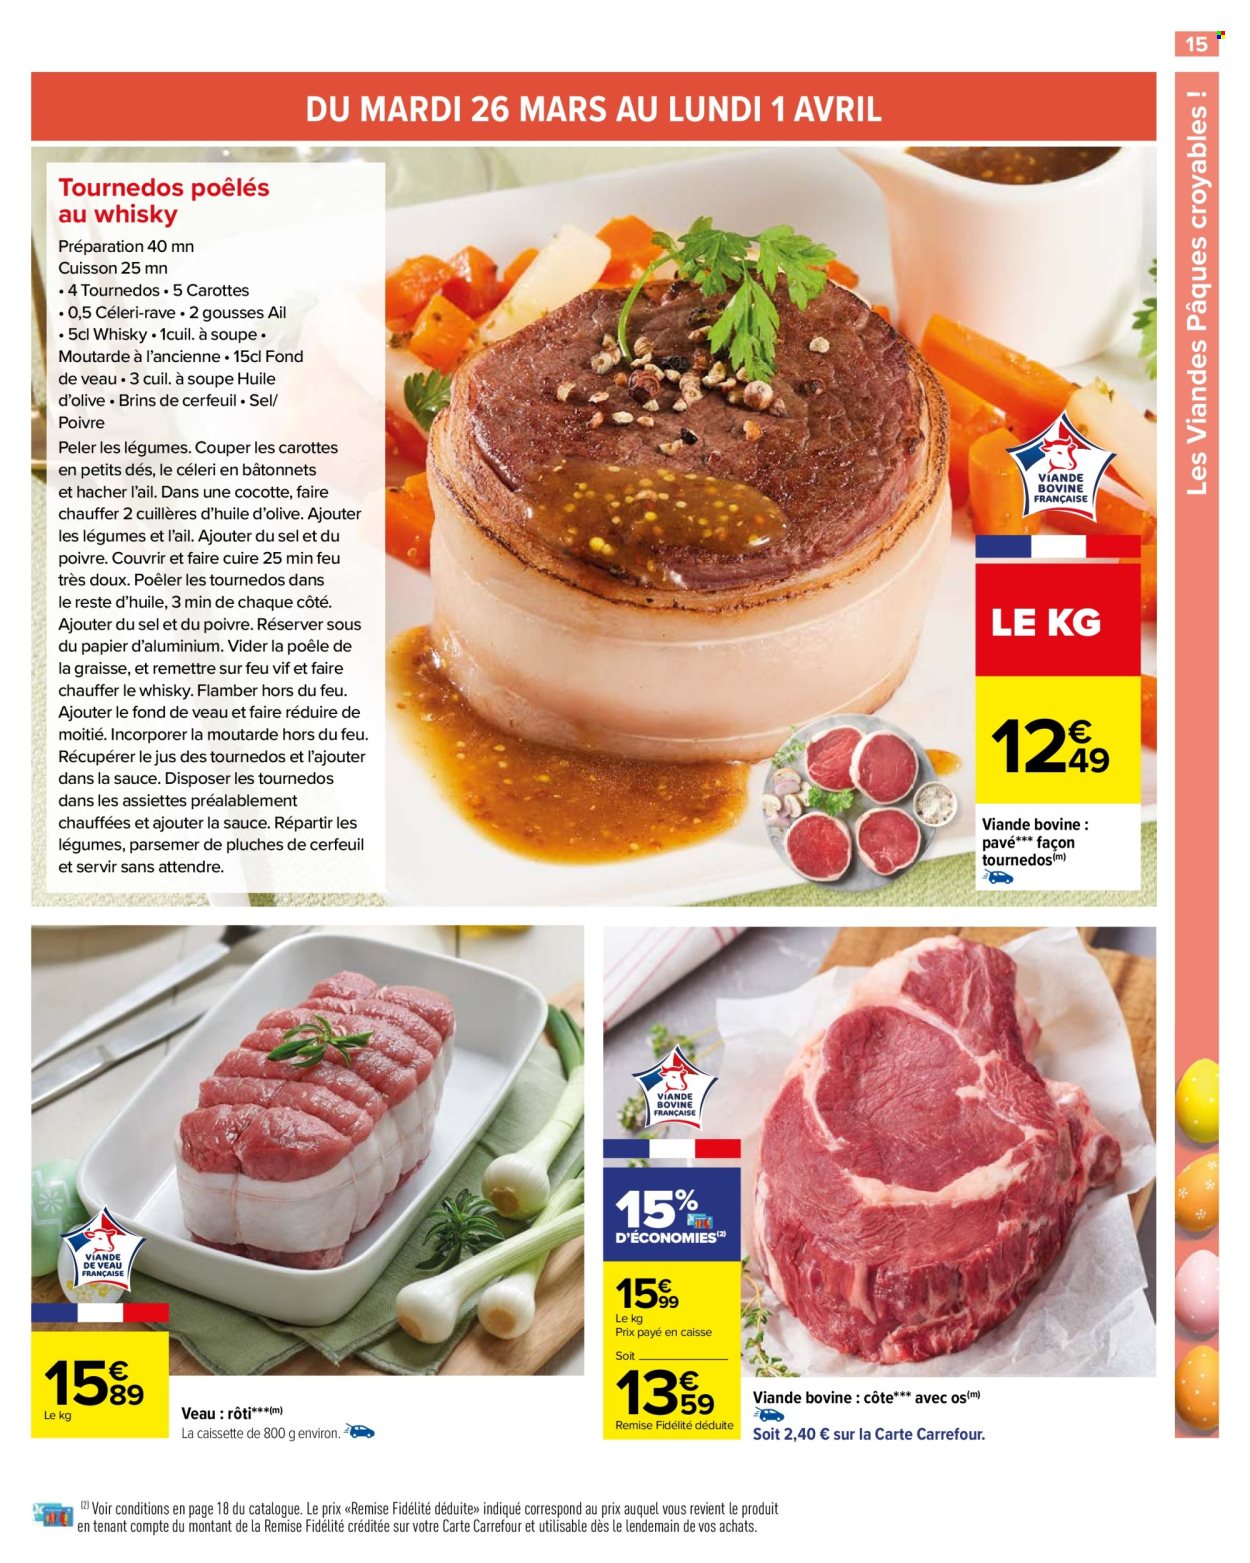 Catalogue Carrefour Hypermarchés - 22.03.2024 - 01.04.2024. 